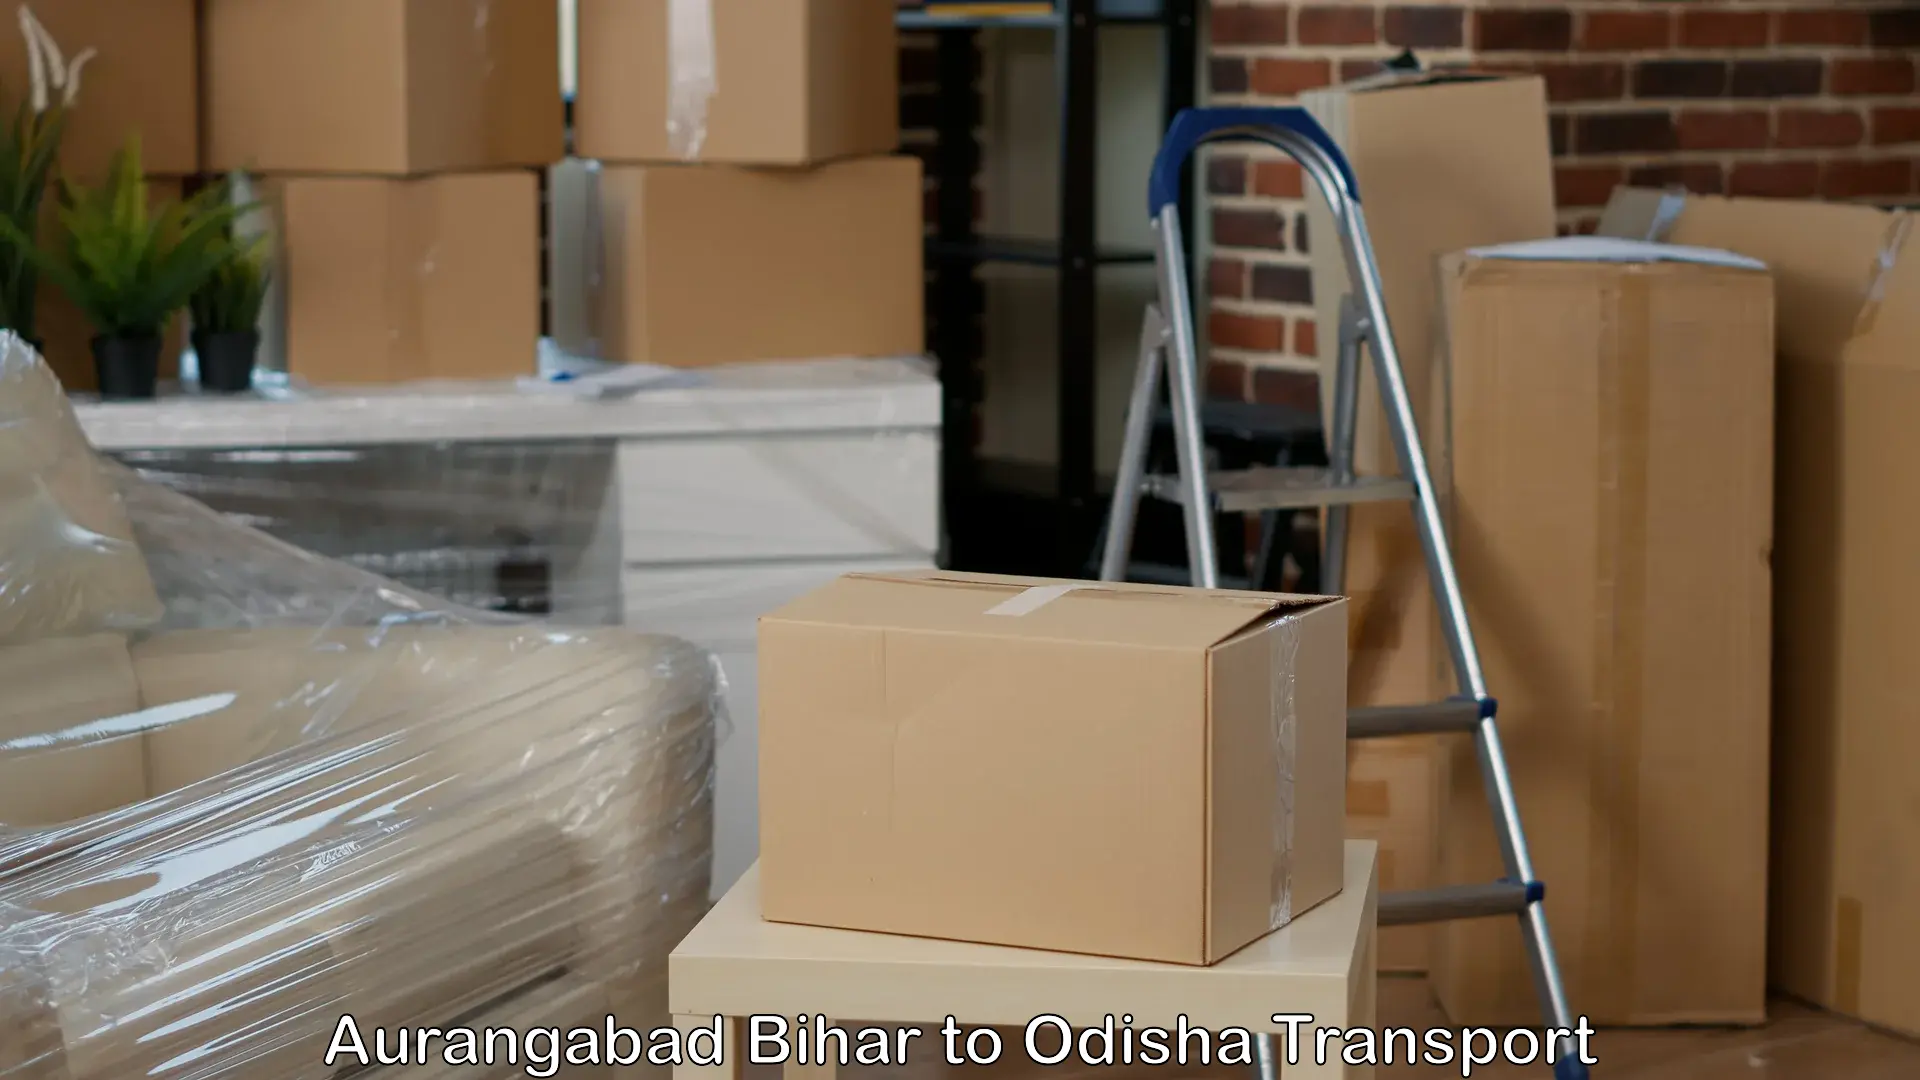 Cargo transport services Aurangabad Bihar to Gunupur